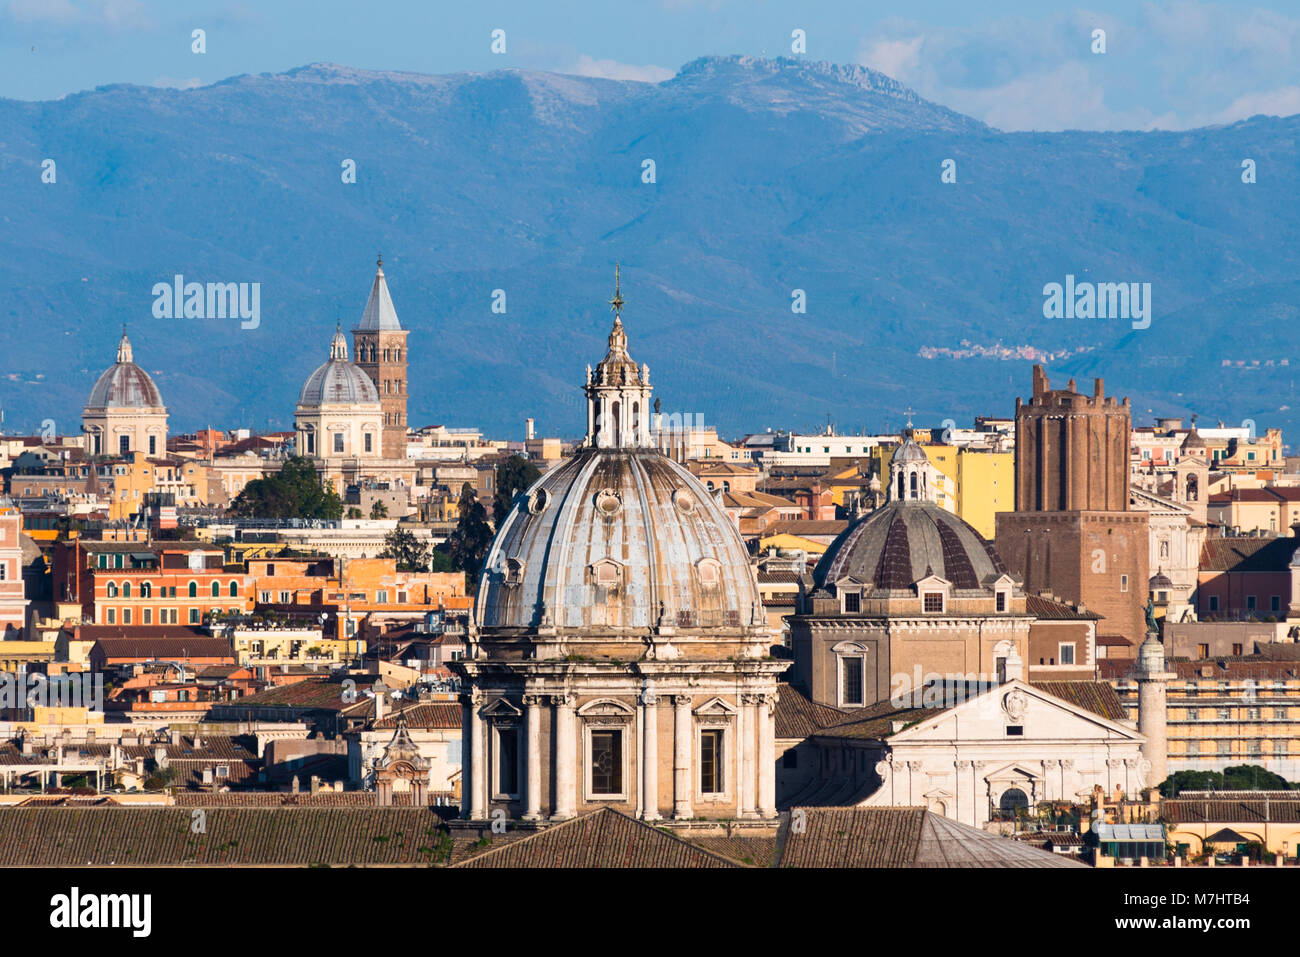 Die Altstadt von Rom City Skyline mit Kuppeln und Turmspitzen von Gianicolo-hügel Terrasse aus gesehen. Rom, Latium, Italien. Stockfoto